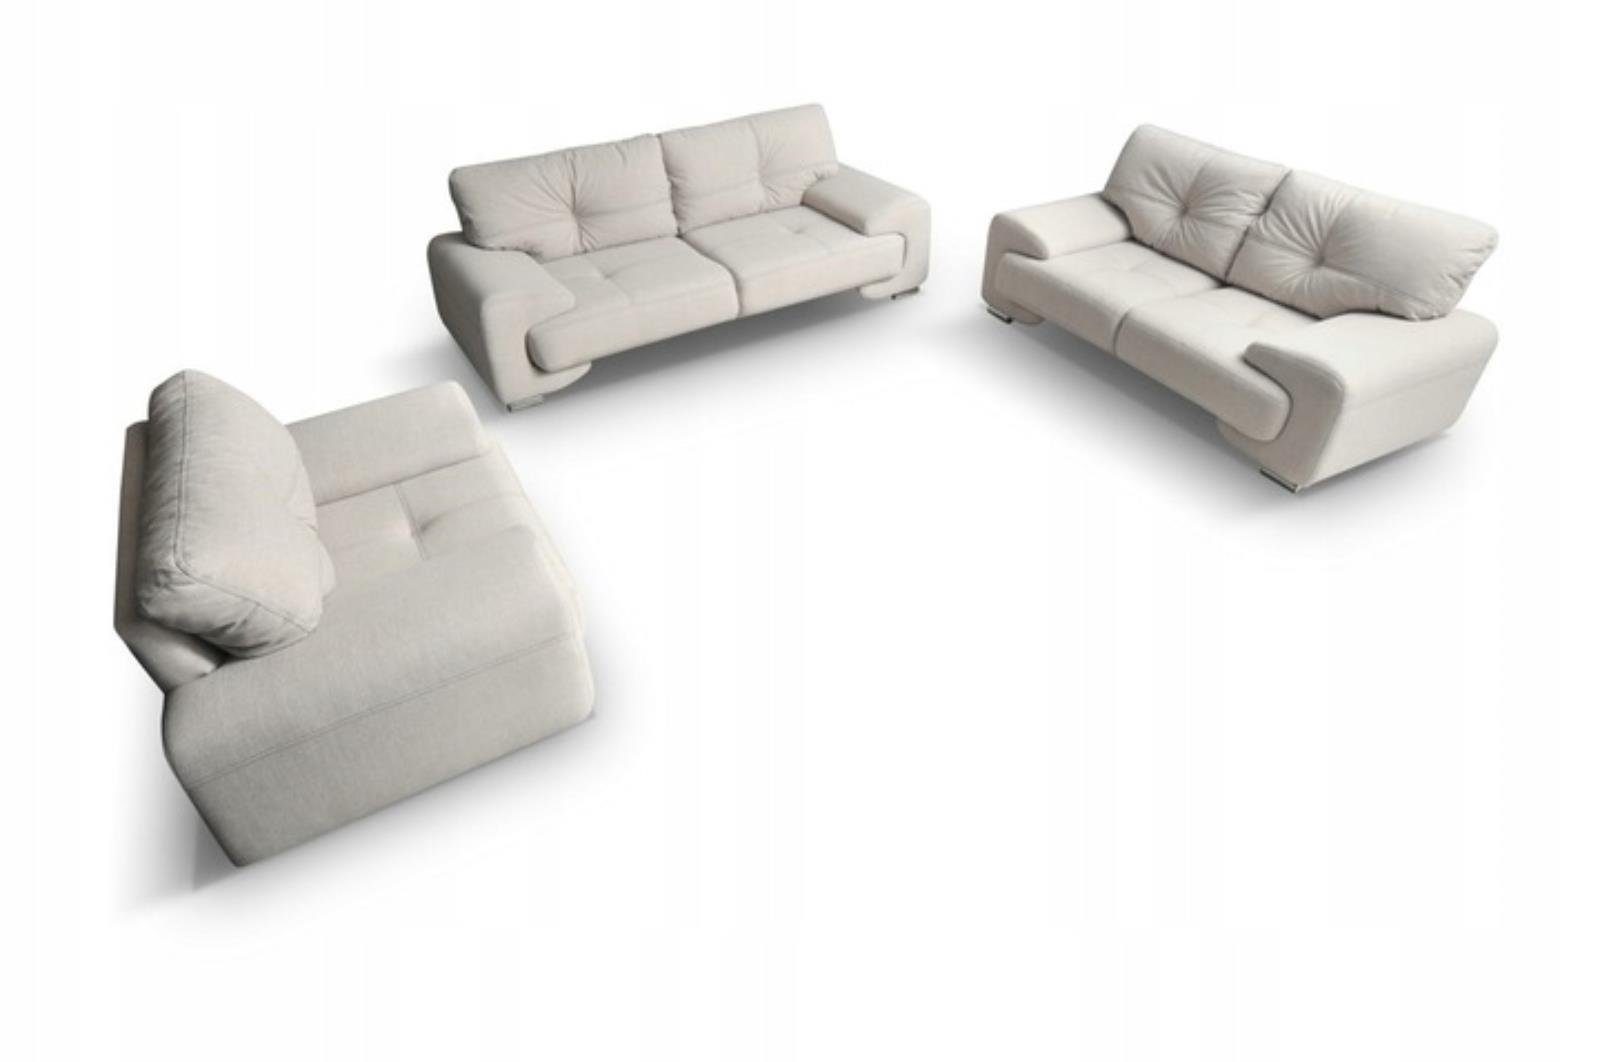 Beautysofa Polstergarnitur NEMO, (Sessel + Zweisitzer + sofa, Couchgarnitur 135 / 190 / 230 cm), inklusive Wellenunterfederung, bequemer Sitz, Chrombeine Beige